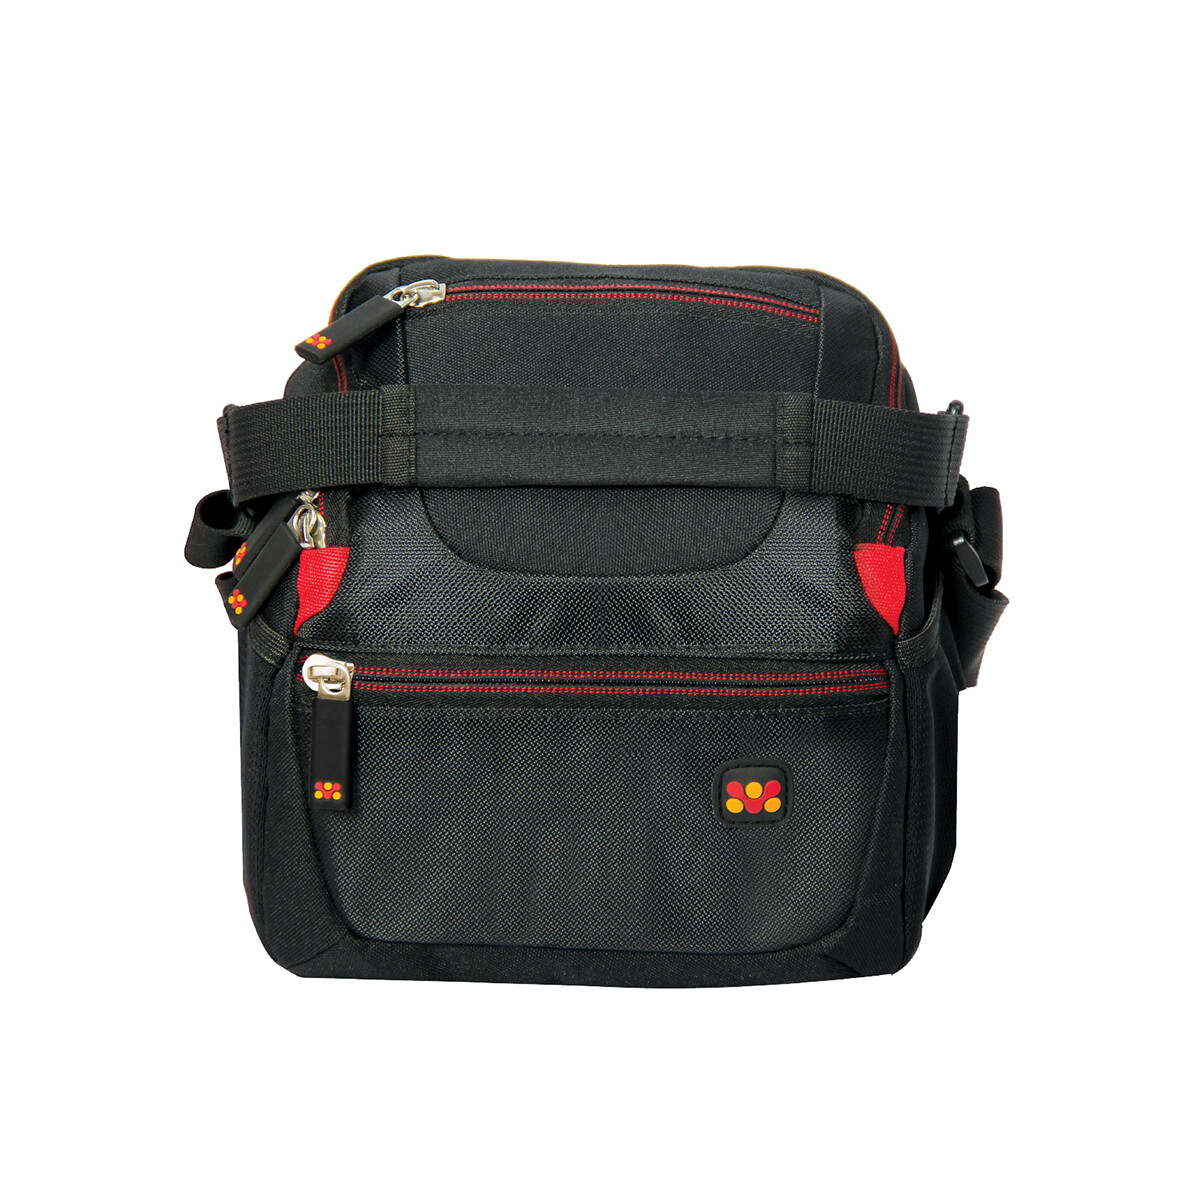 Promate HANDYPAK1-S Trendy SLR and DSLR Shoulder Camera Bag with Mesh Pocket